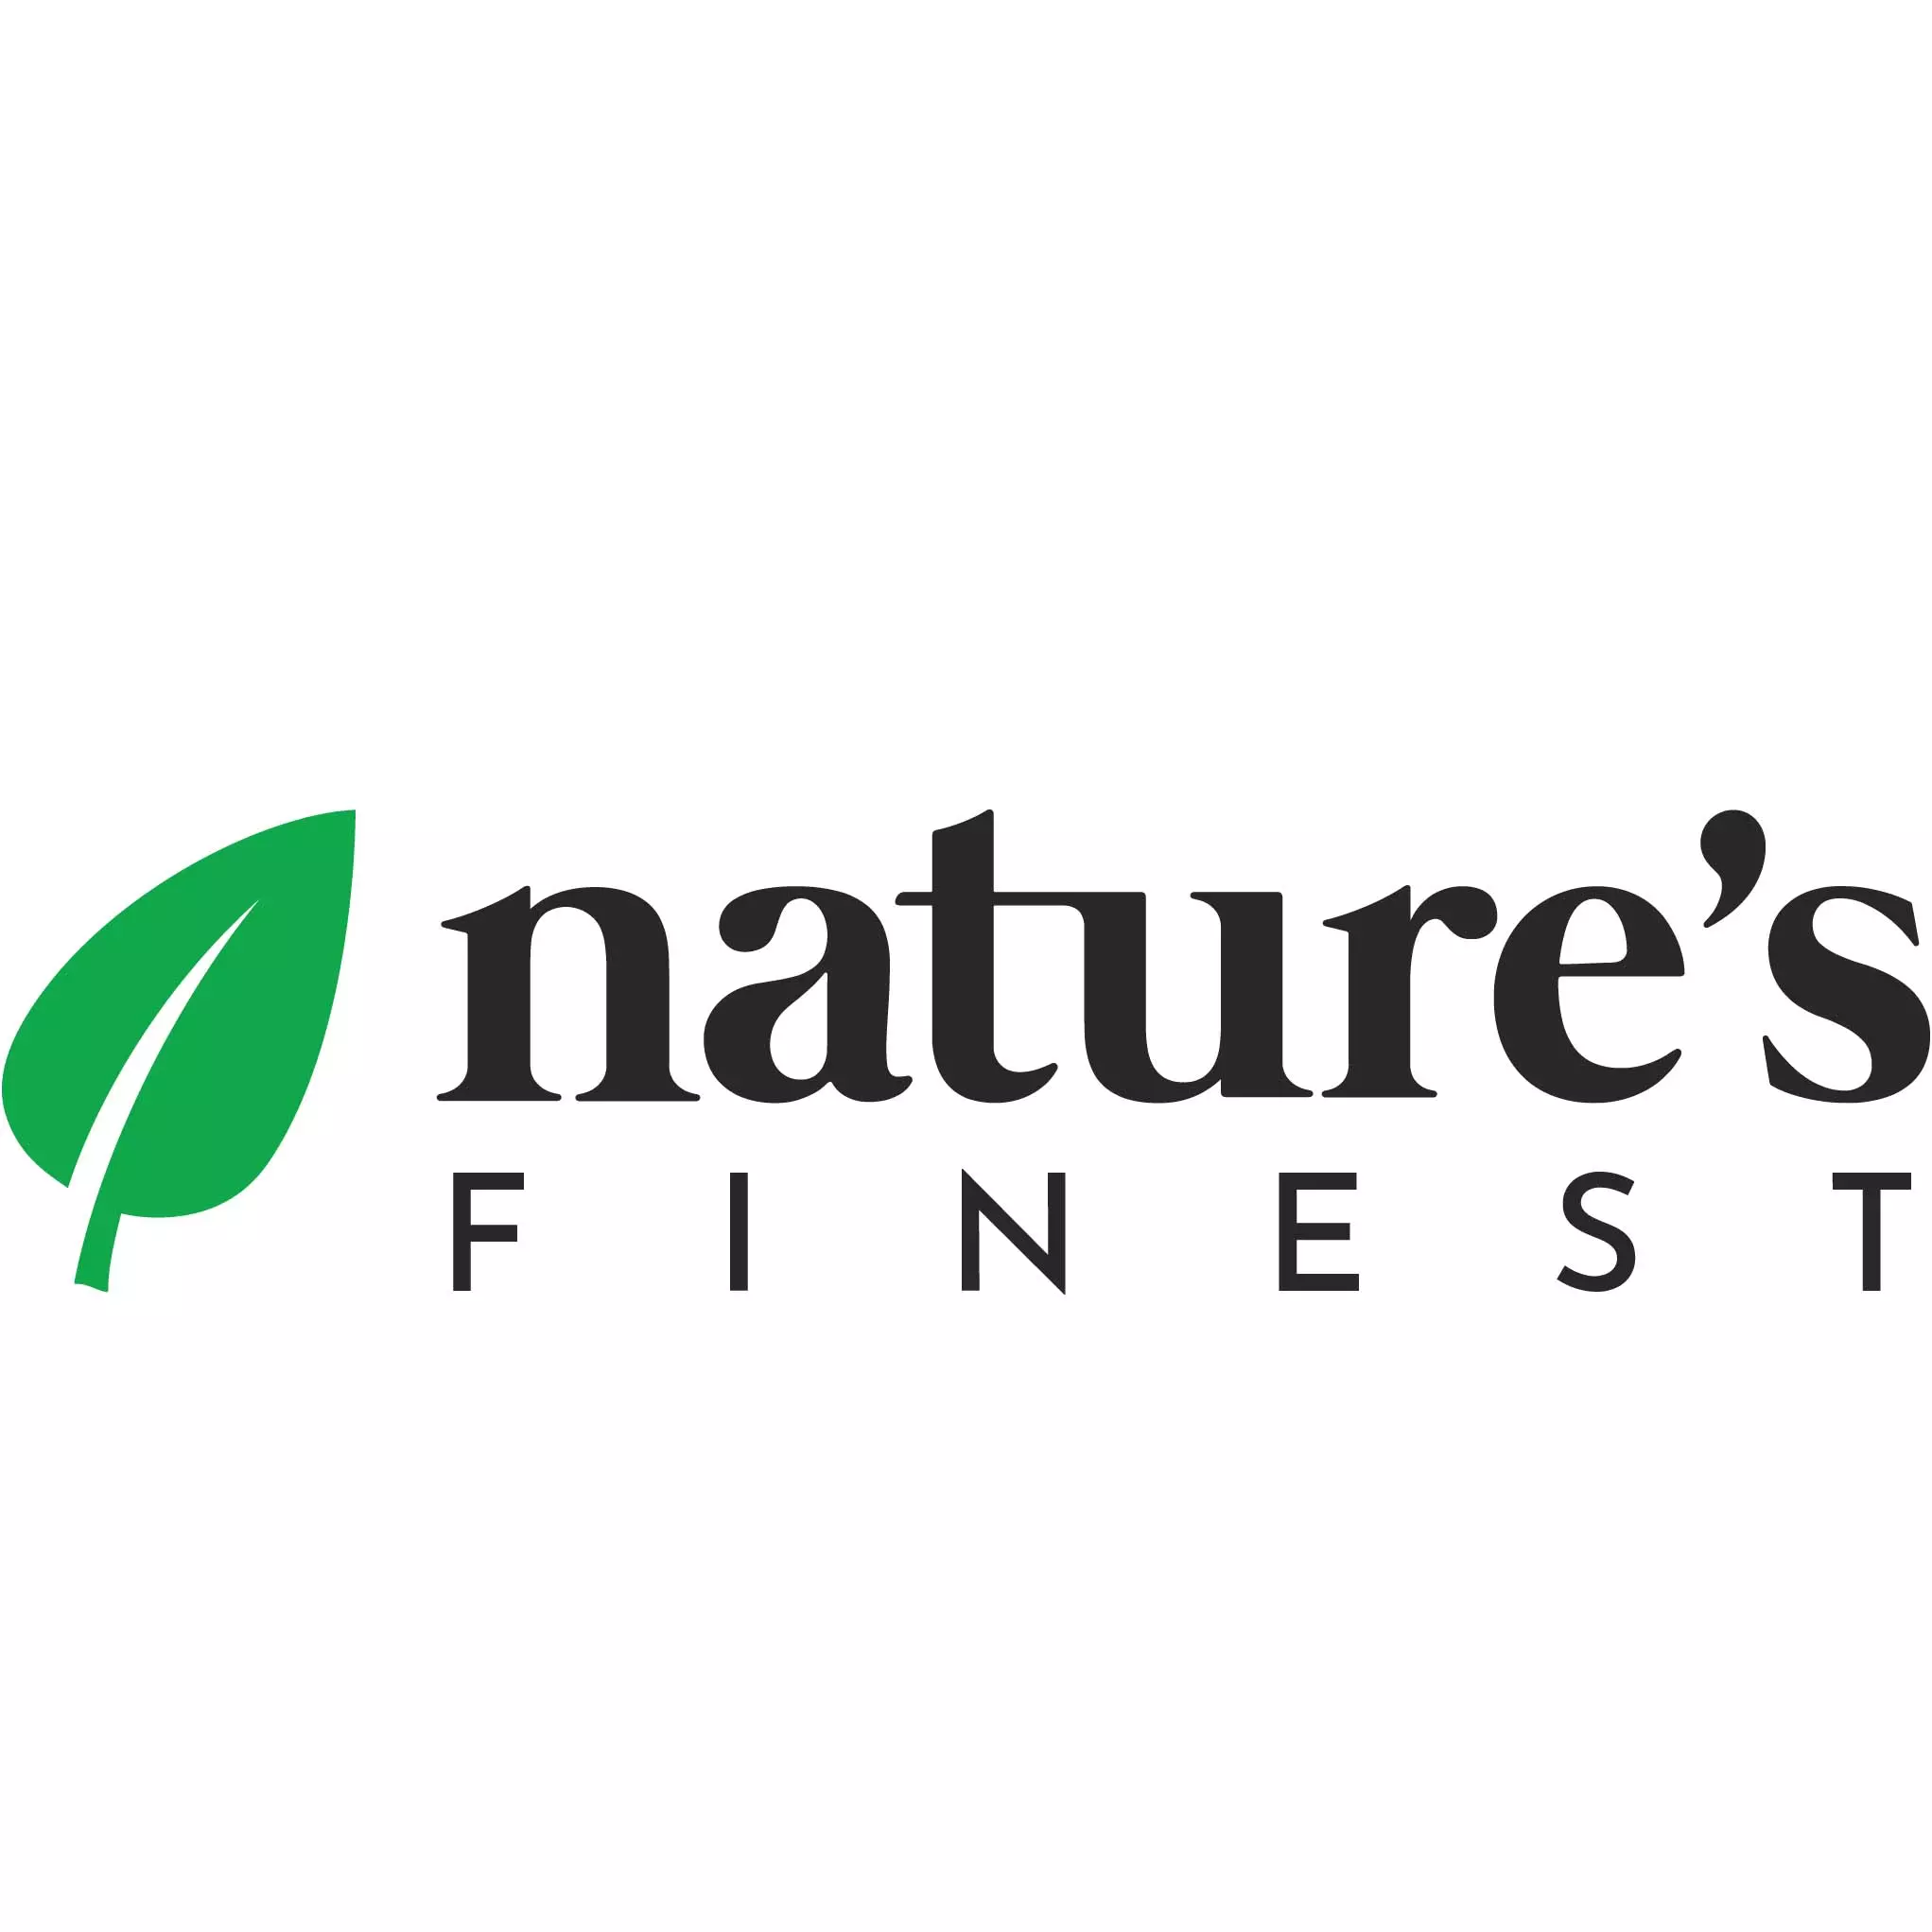 Natures Finest Akció - kedvezmények az egészséges élelmiszerekre a Naturesfinest.hu-n